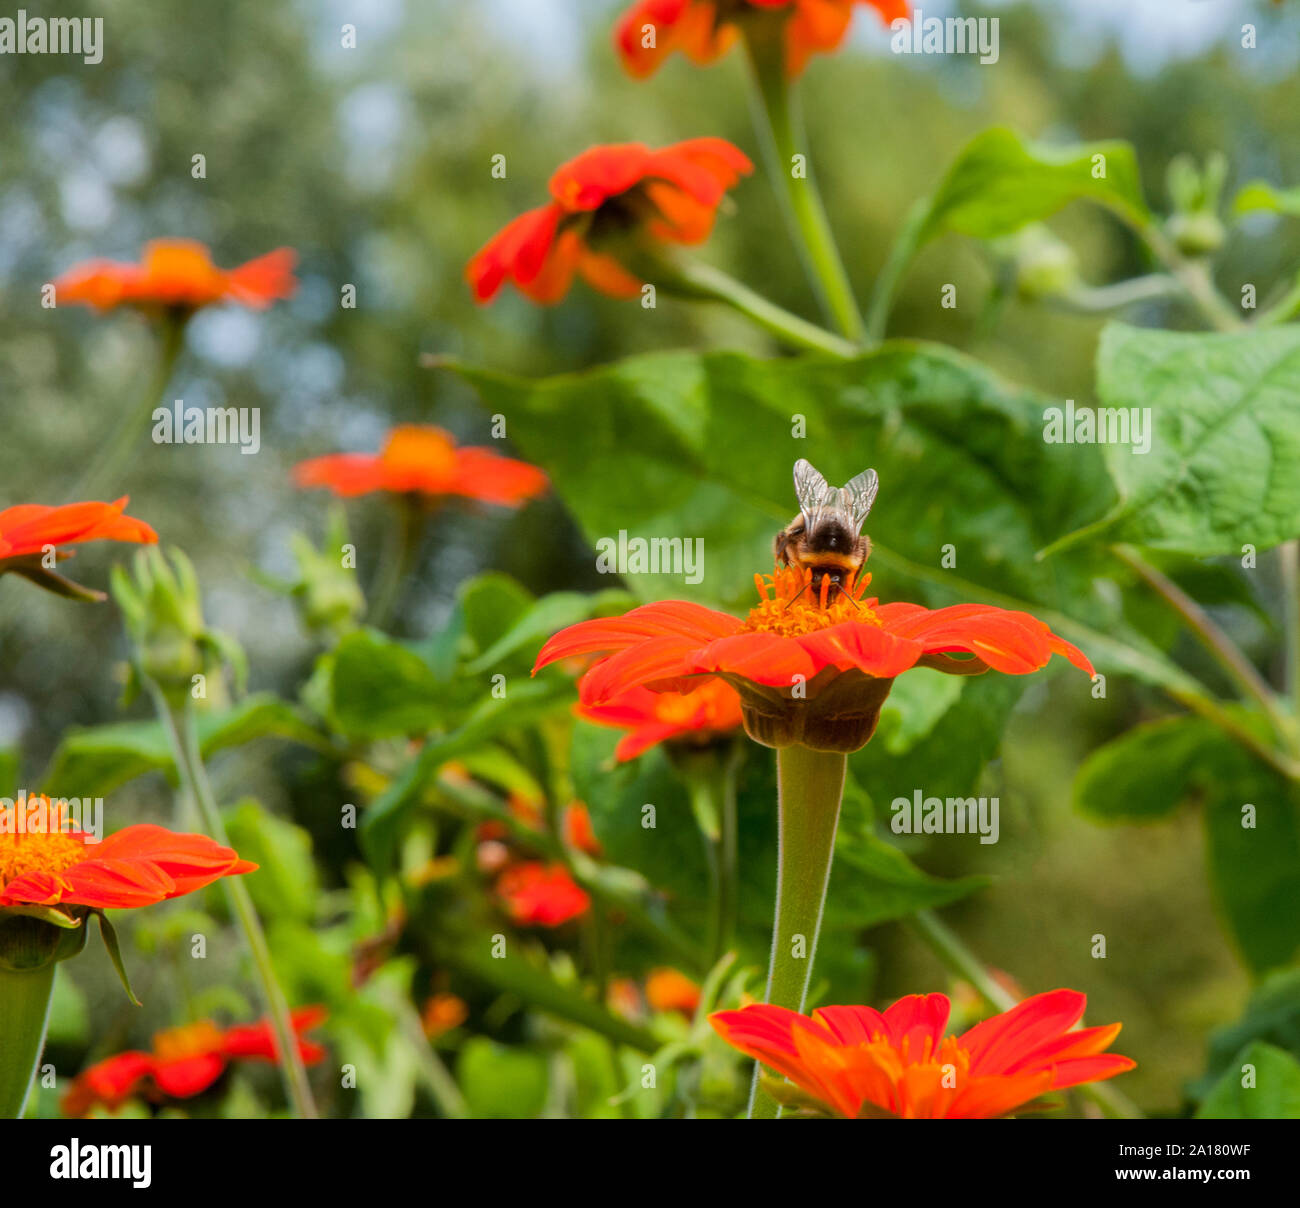 Bourdon Bombus terrestris la collecte du pollen d'une fleur Helenium et antennes aile montrant en détail la nature et la faune dans son habitat naturel Banque D'Images